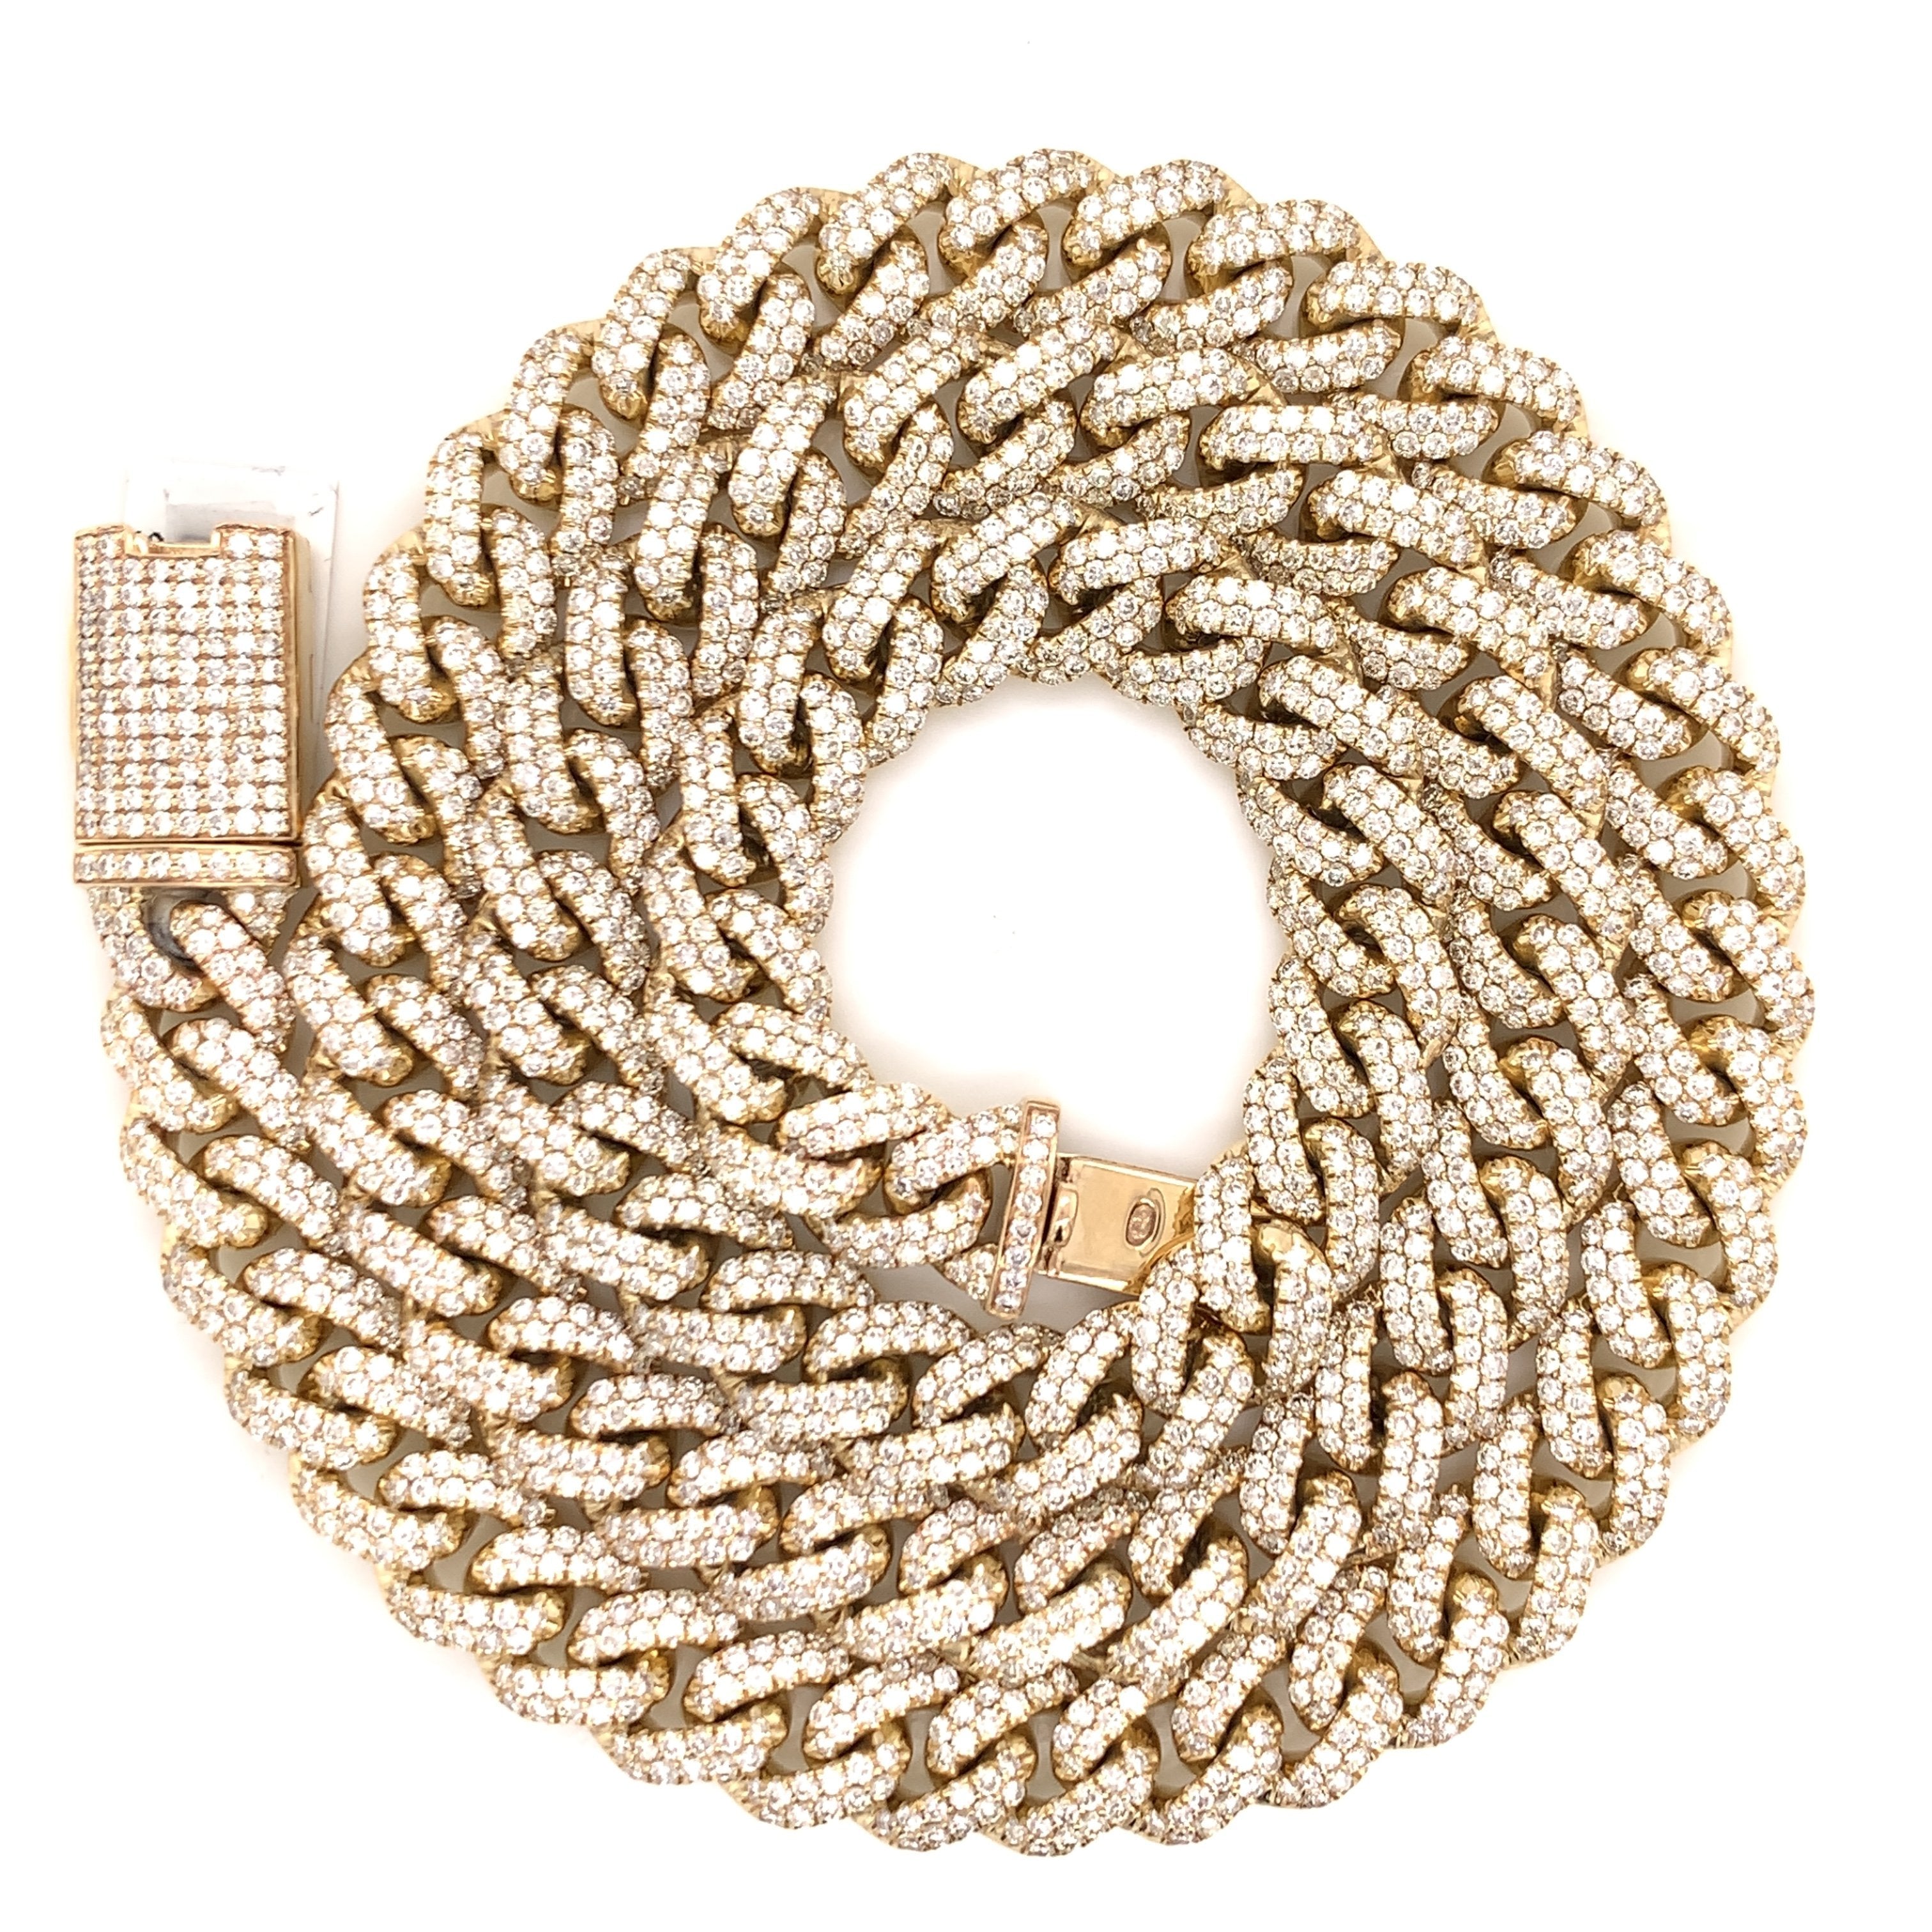 28.00 CT. Diamond Miami Cuban Chain in 10KT Gold - White Carat - USA & Canada